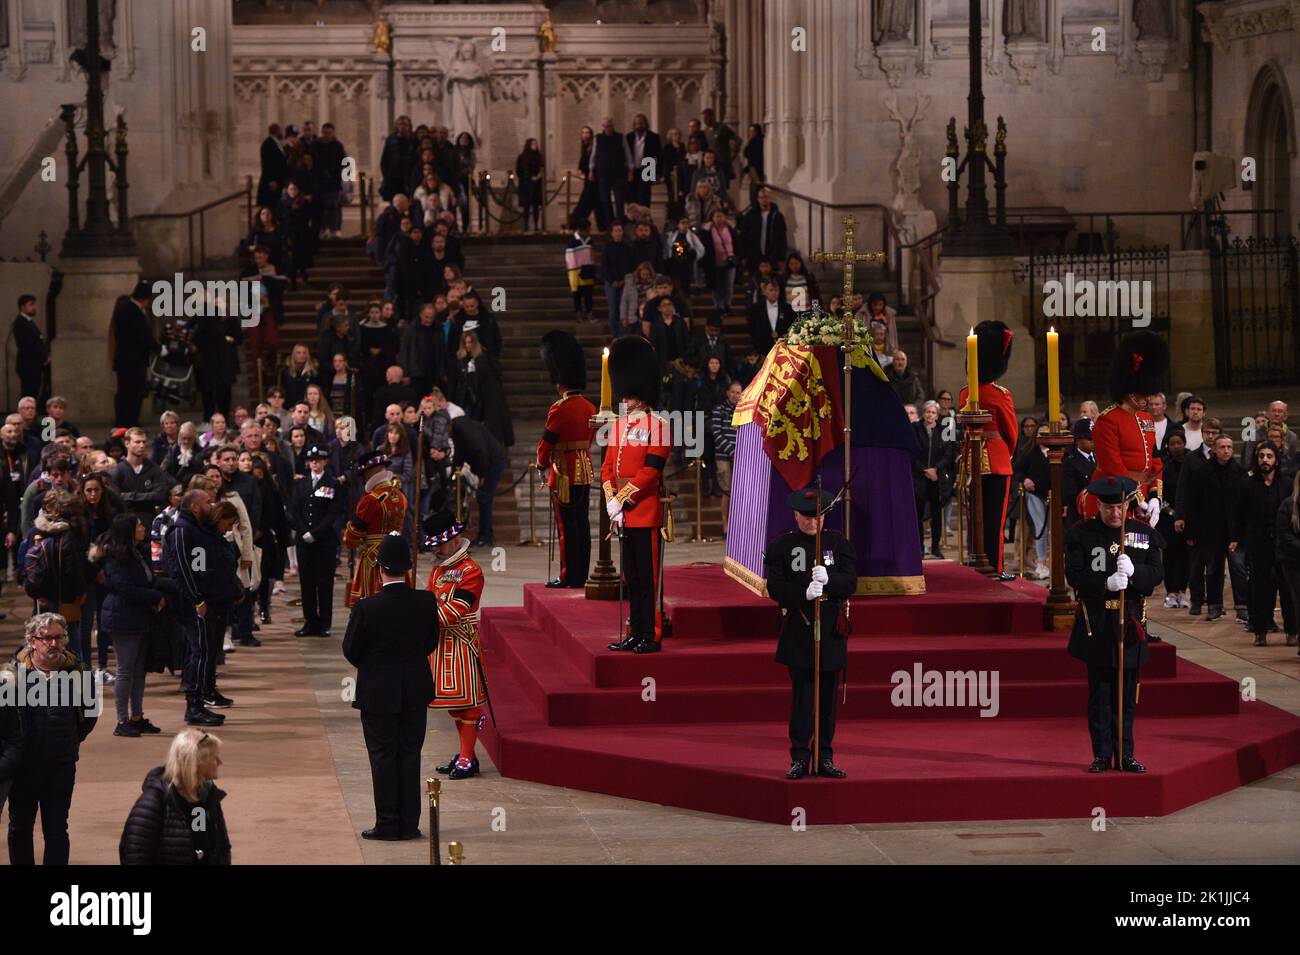 Die Trauernden gehen am Sarg von Königin Elizabeth II. Auf der Katafalke in Westminster Hal vorbei, in der letzten Nacht ihres Staatslegens. Stockfoto